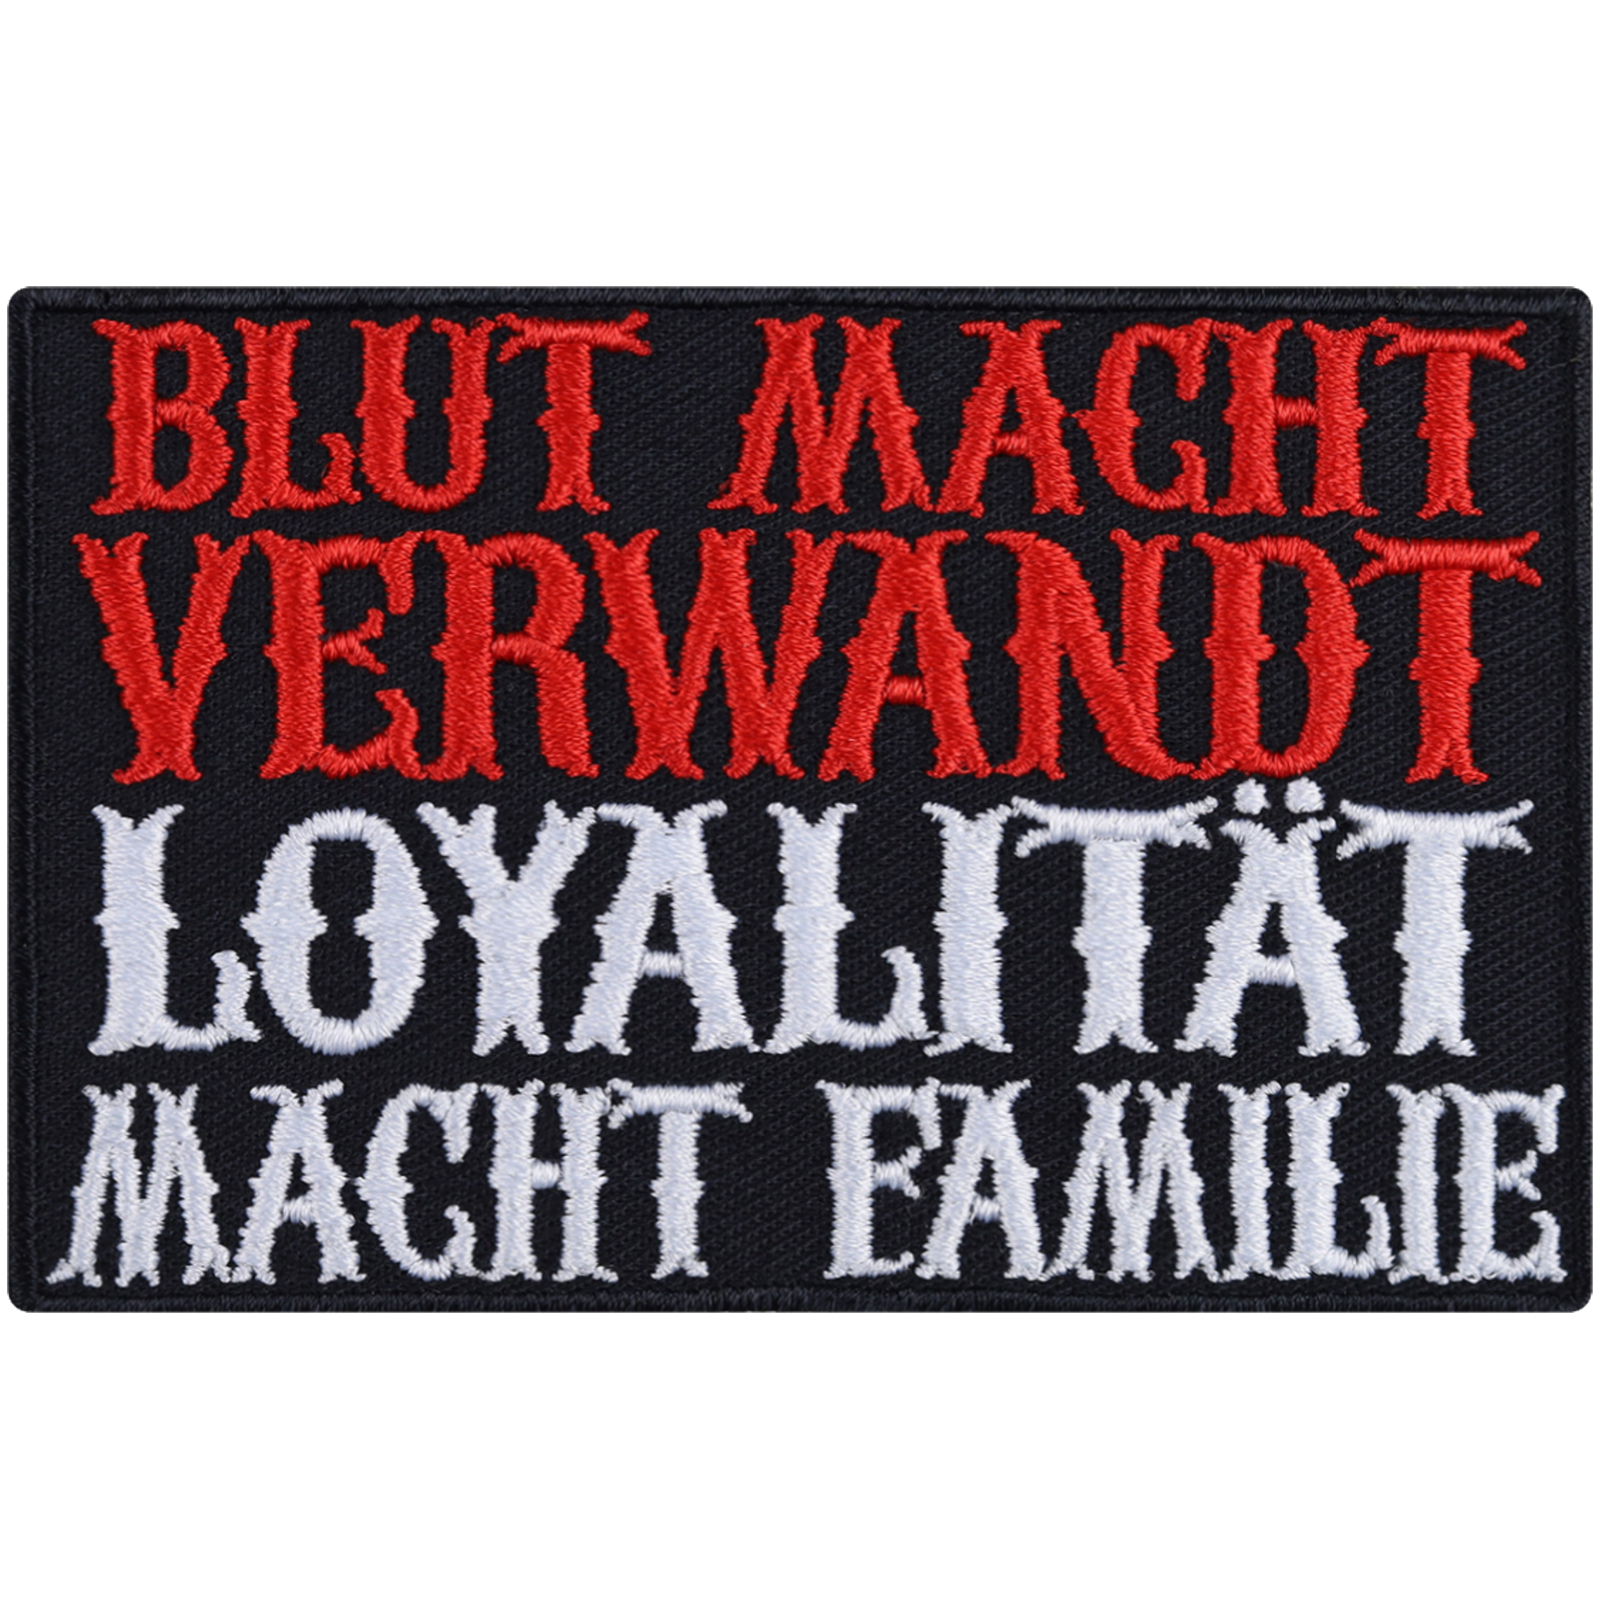 Blut macht verwandt, Loyalität macht Familie - Patch